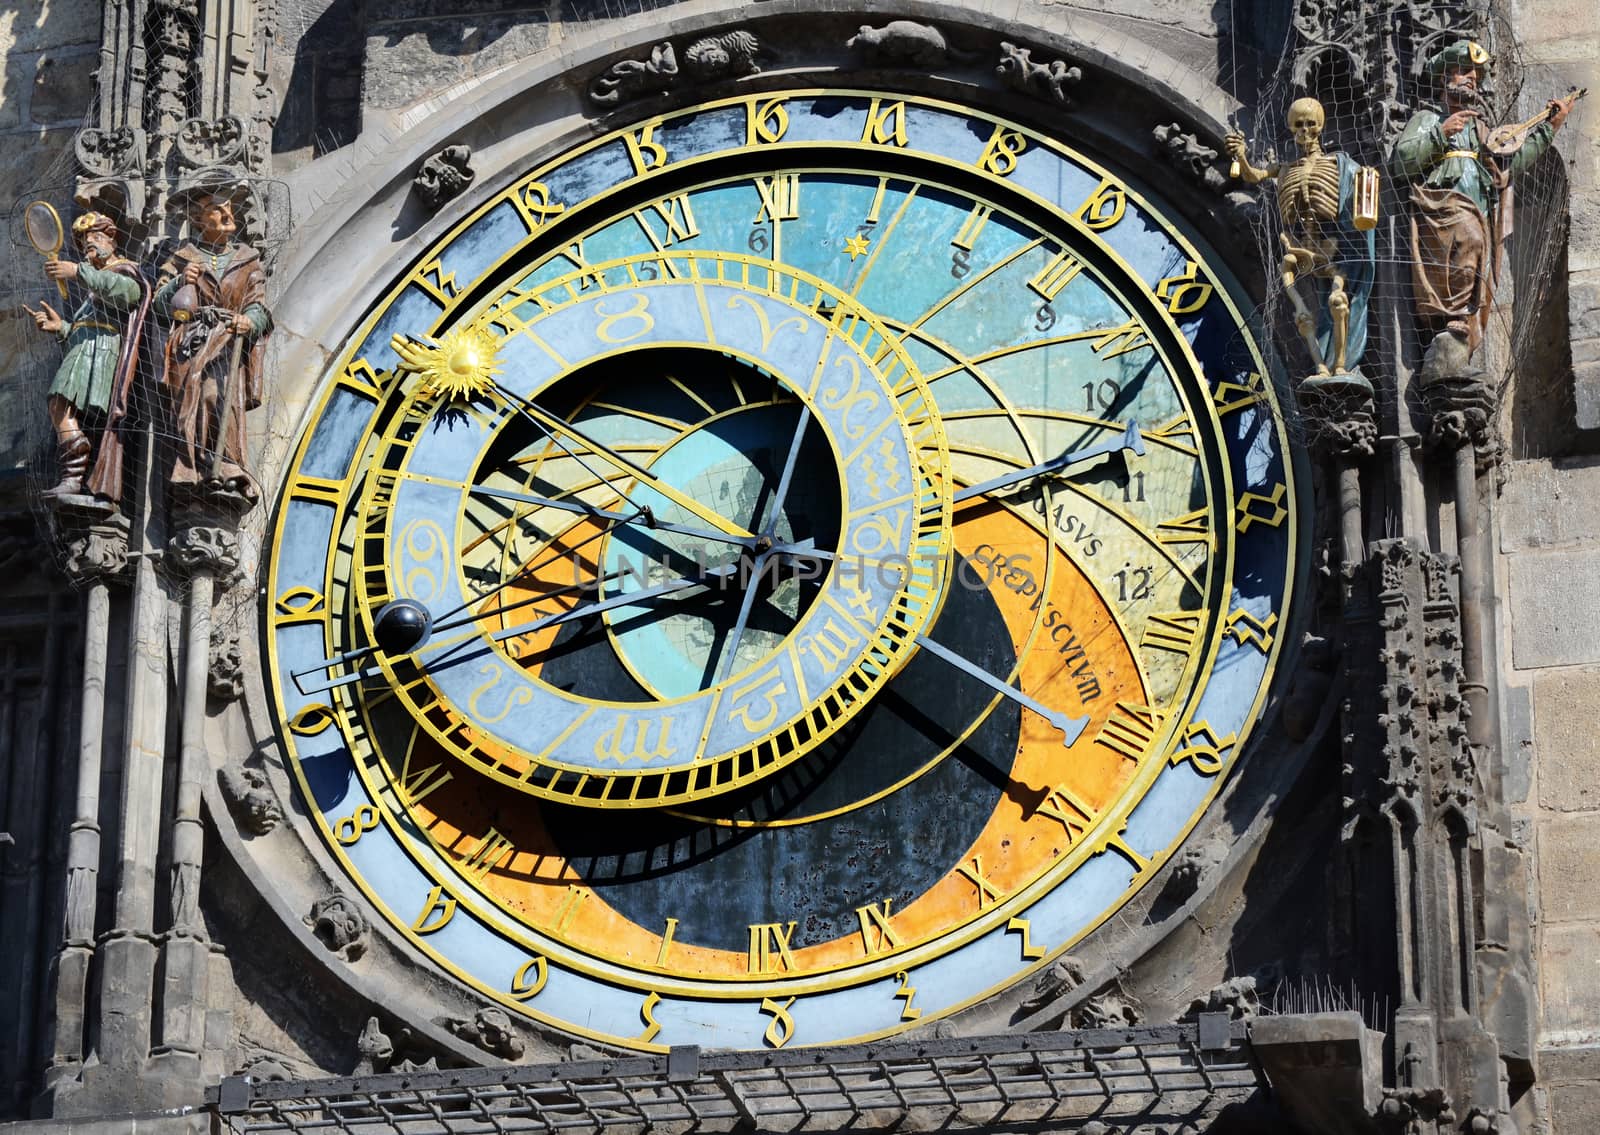 Astronomical clock, Prague by sarkao